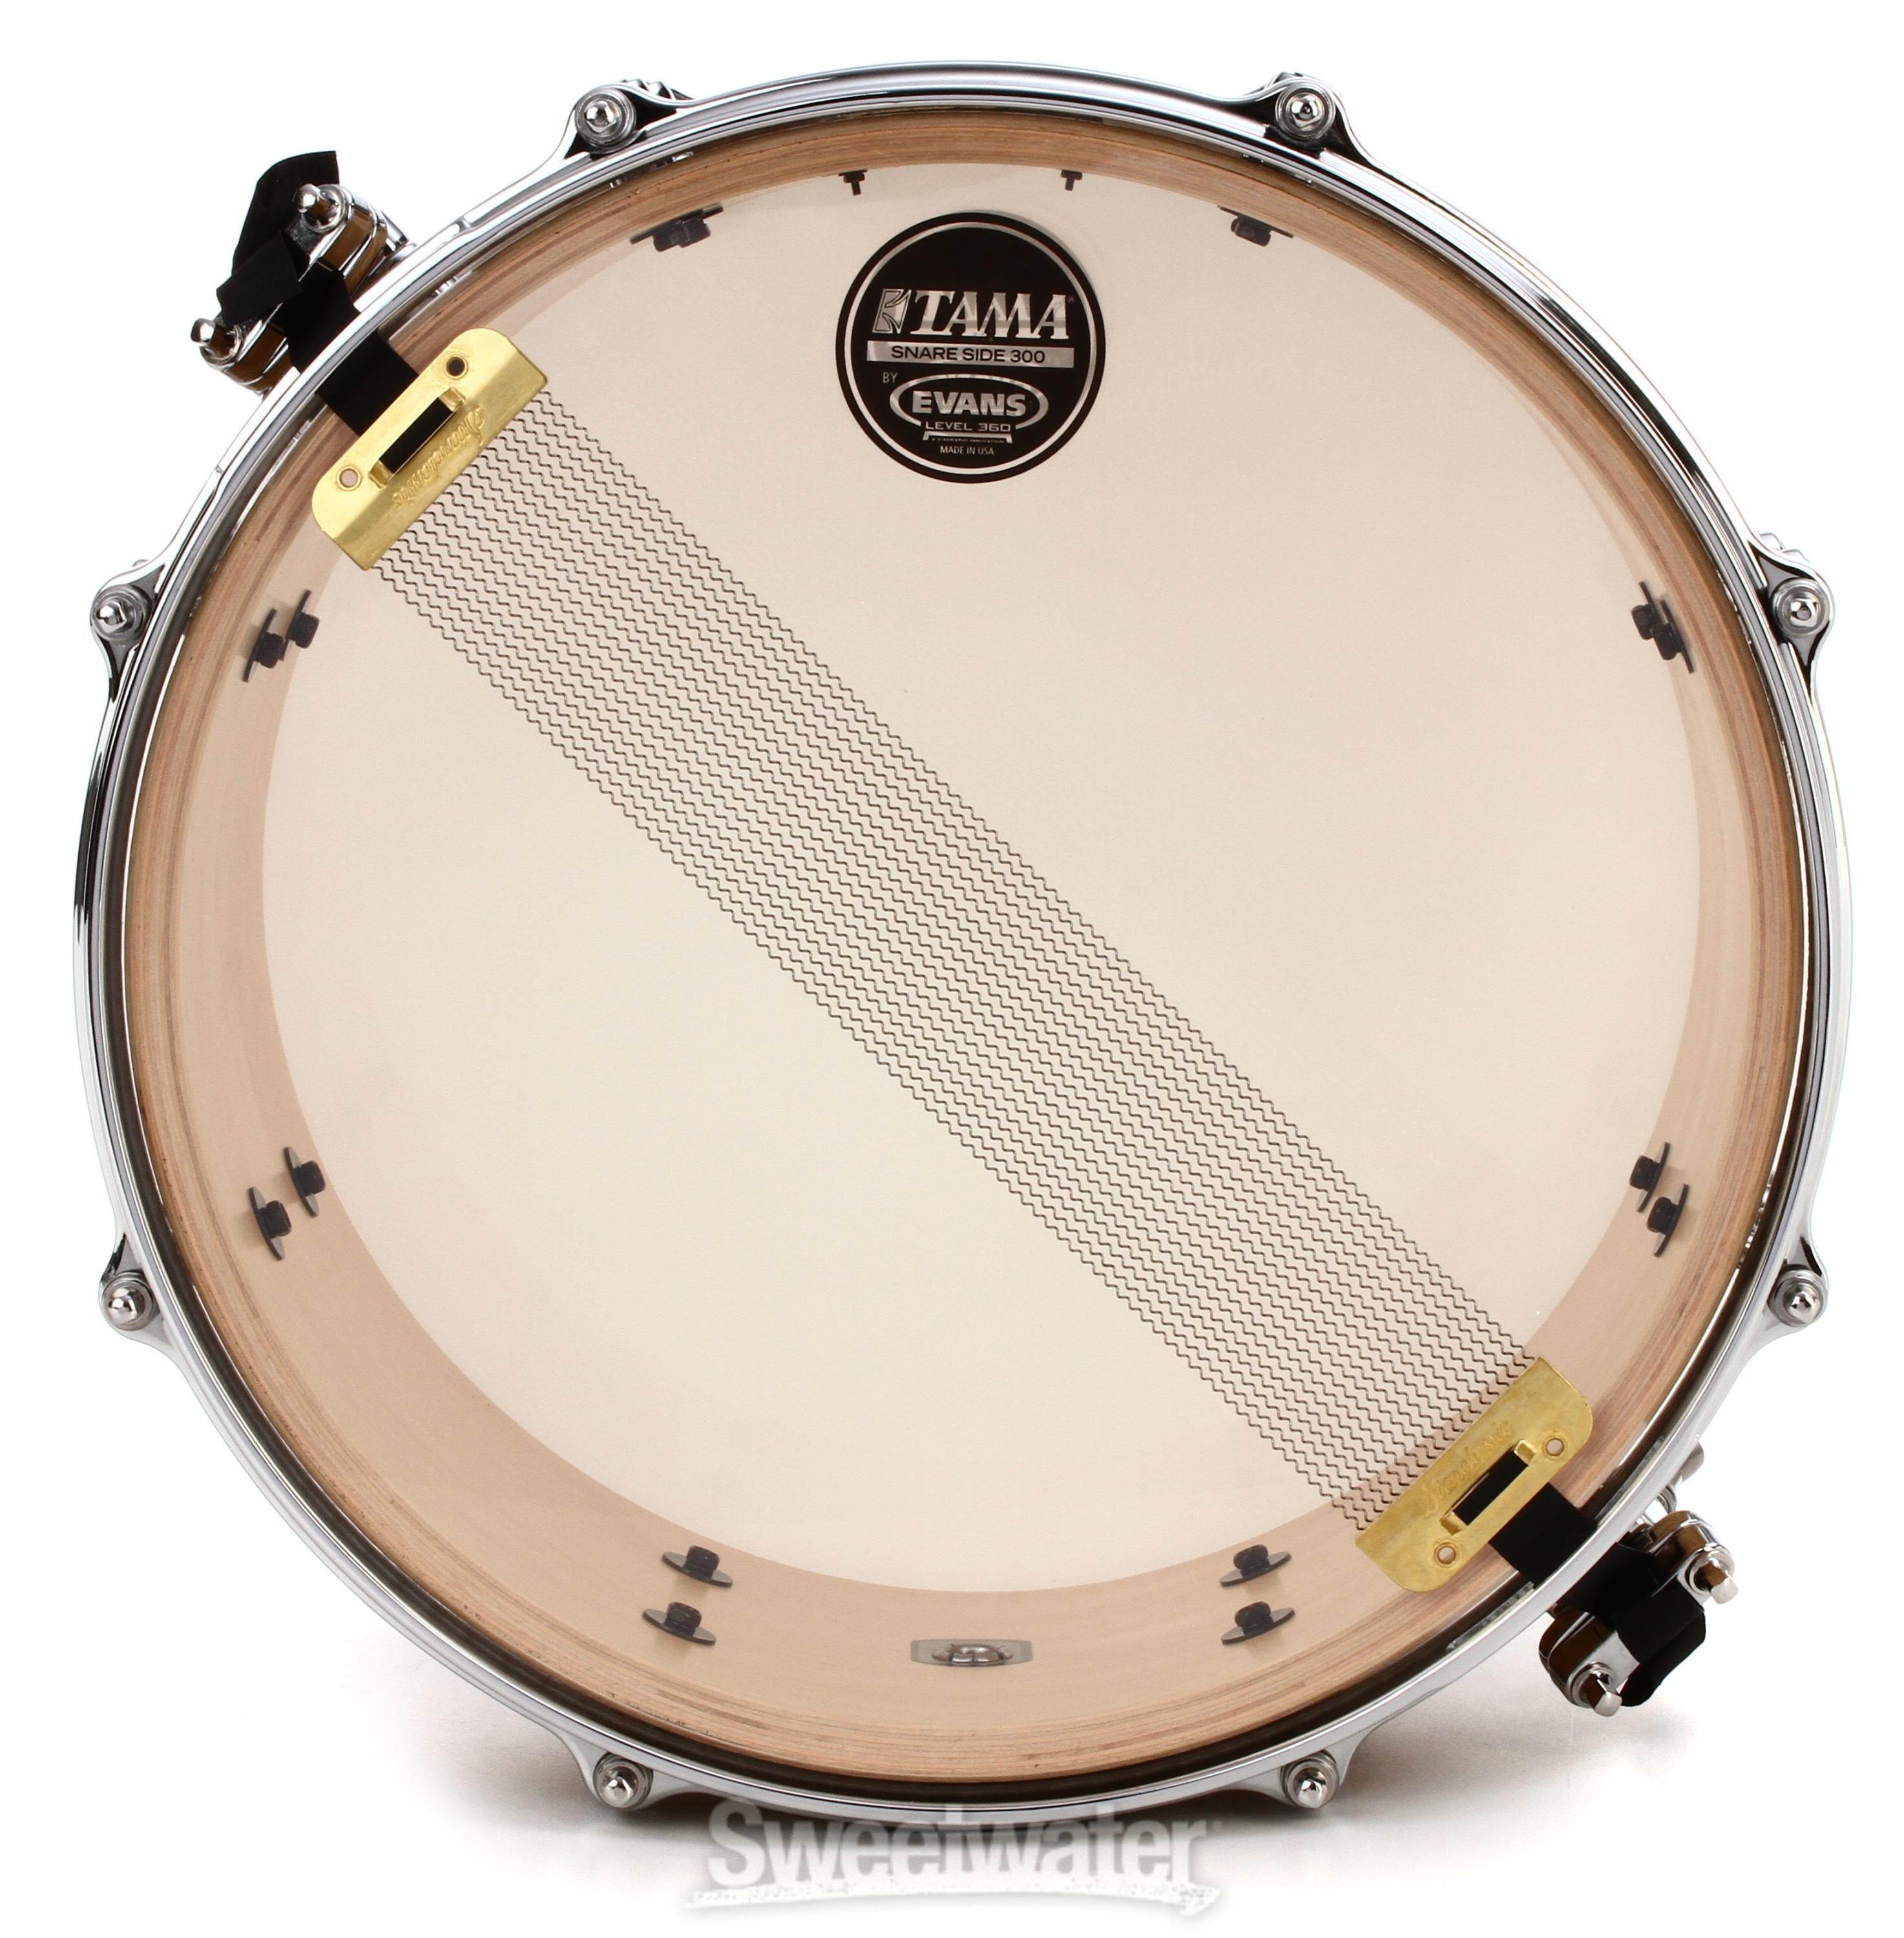 Tama S.L.P. G-Maple Snare Drum - 7 inch x 13 inch, Satin Tamo Ash